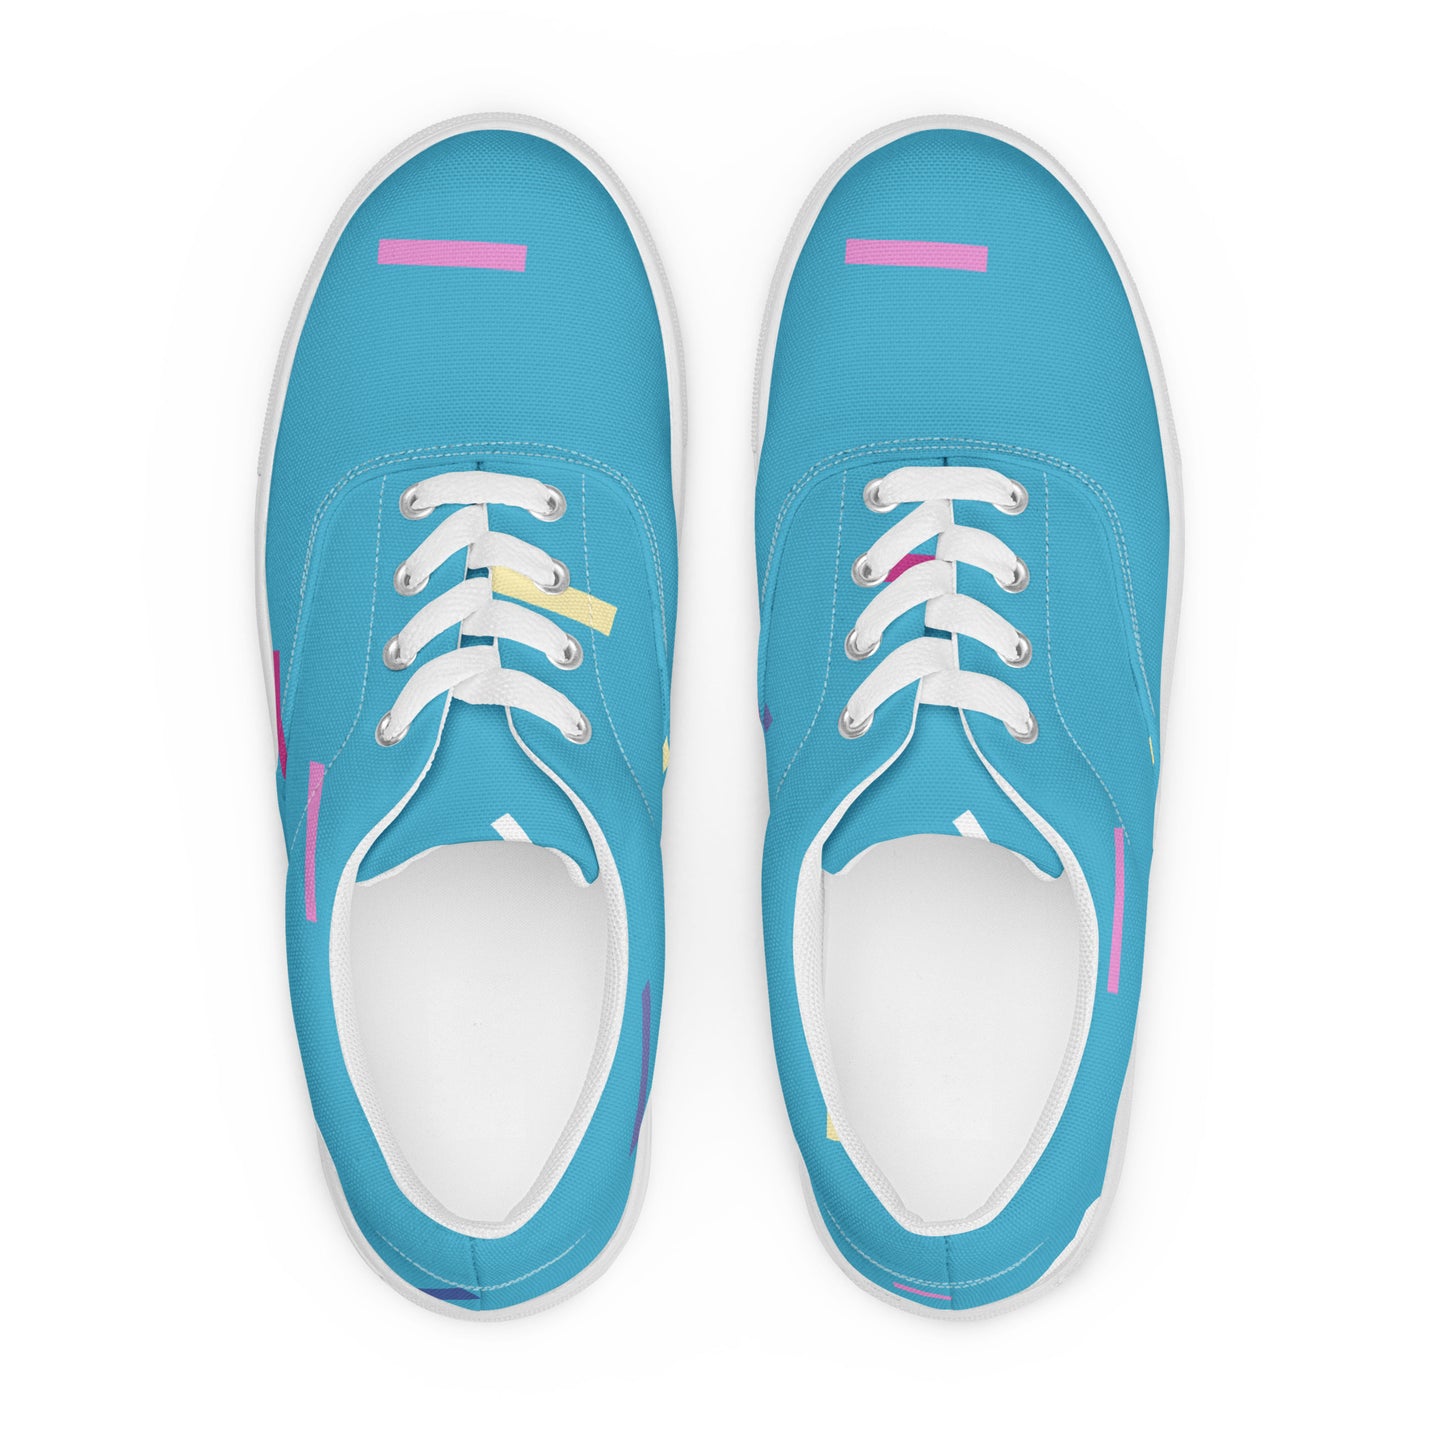 Confetti Men’s lace-up canvas shoes - Kickstart Fragrances